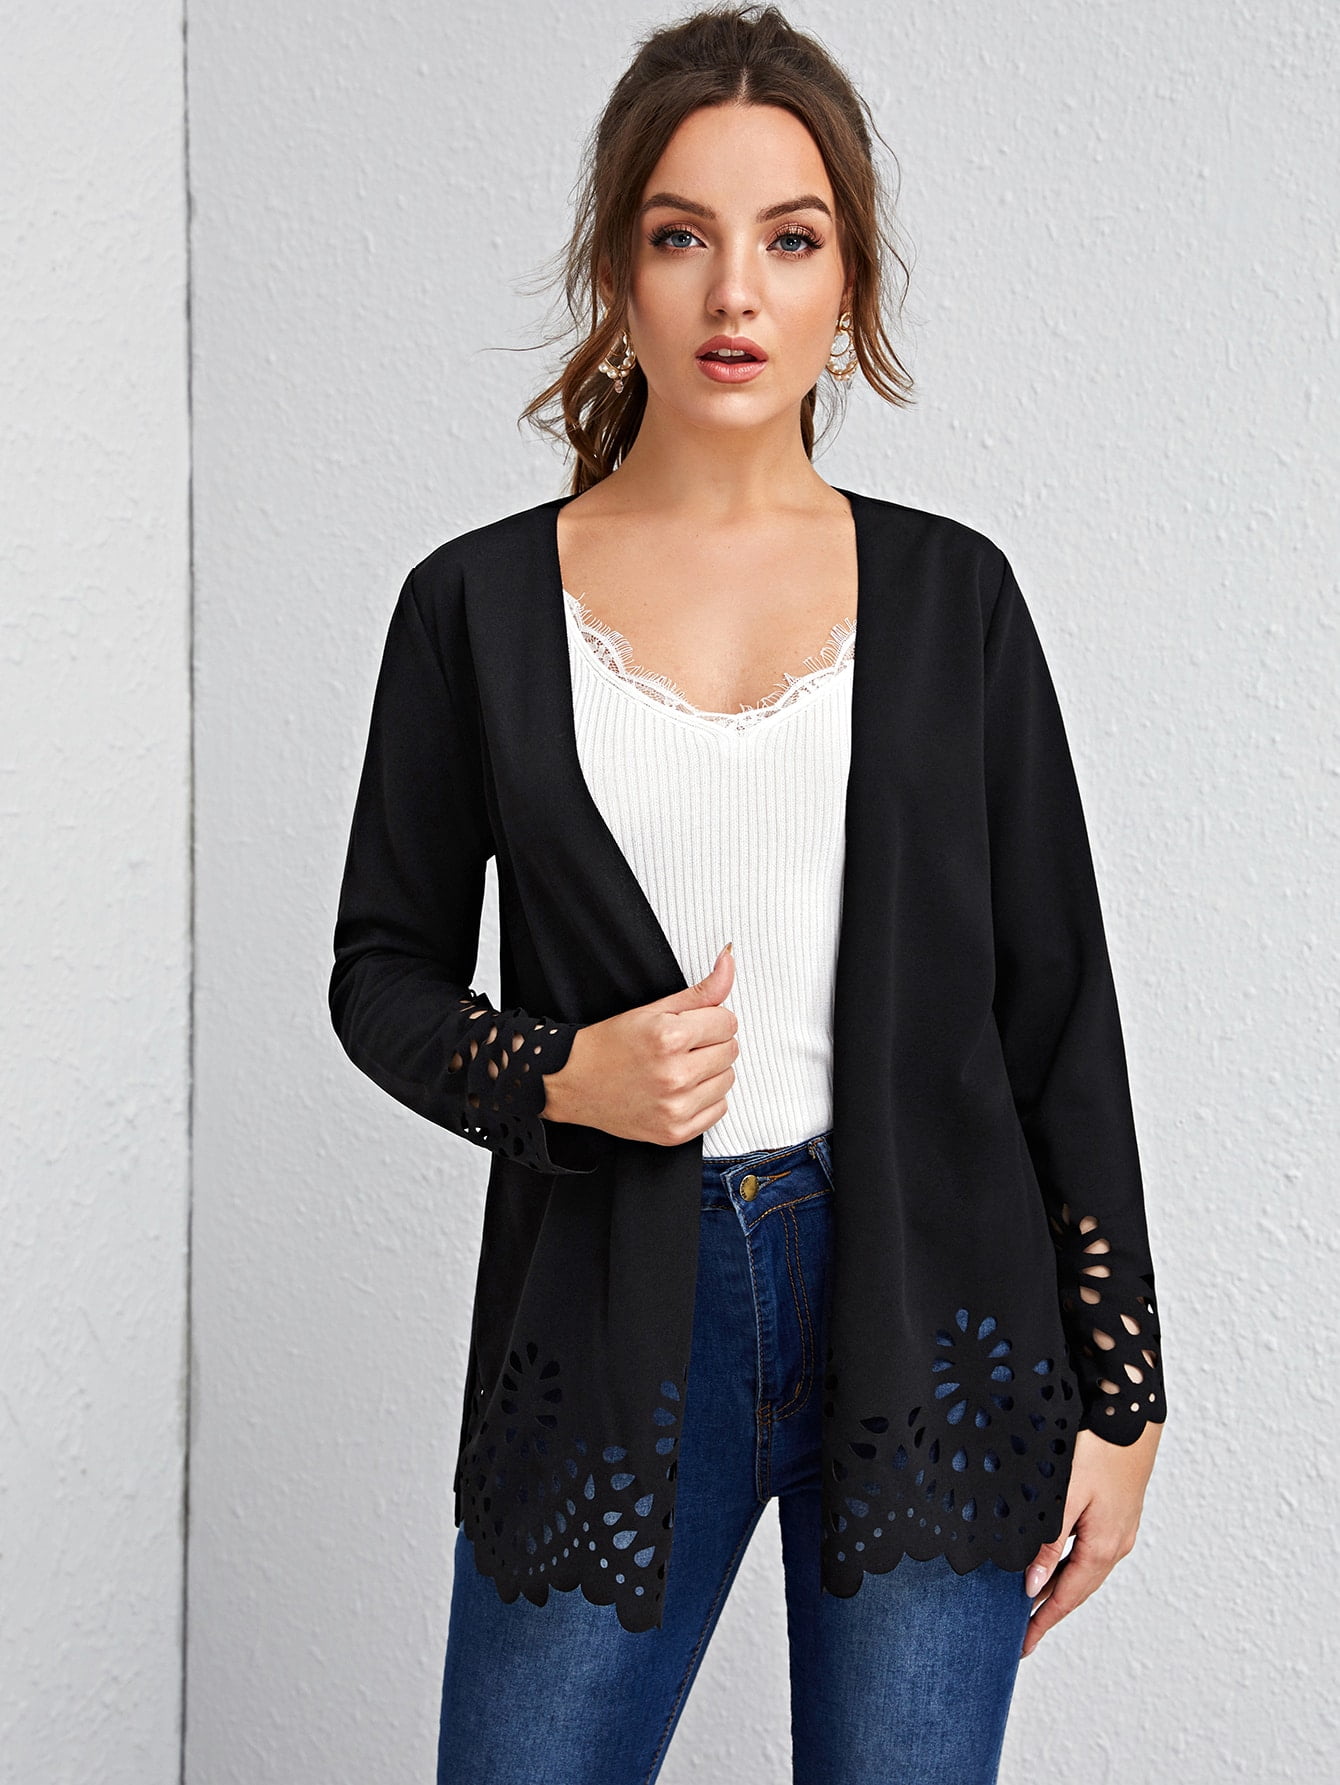 国内送料無料 Women Jacket Outwear Long Sleeve Open Front Scallop Trim Laser Cut Coat Winter Color : Black-0, Size L